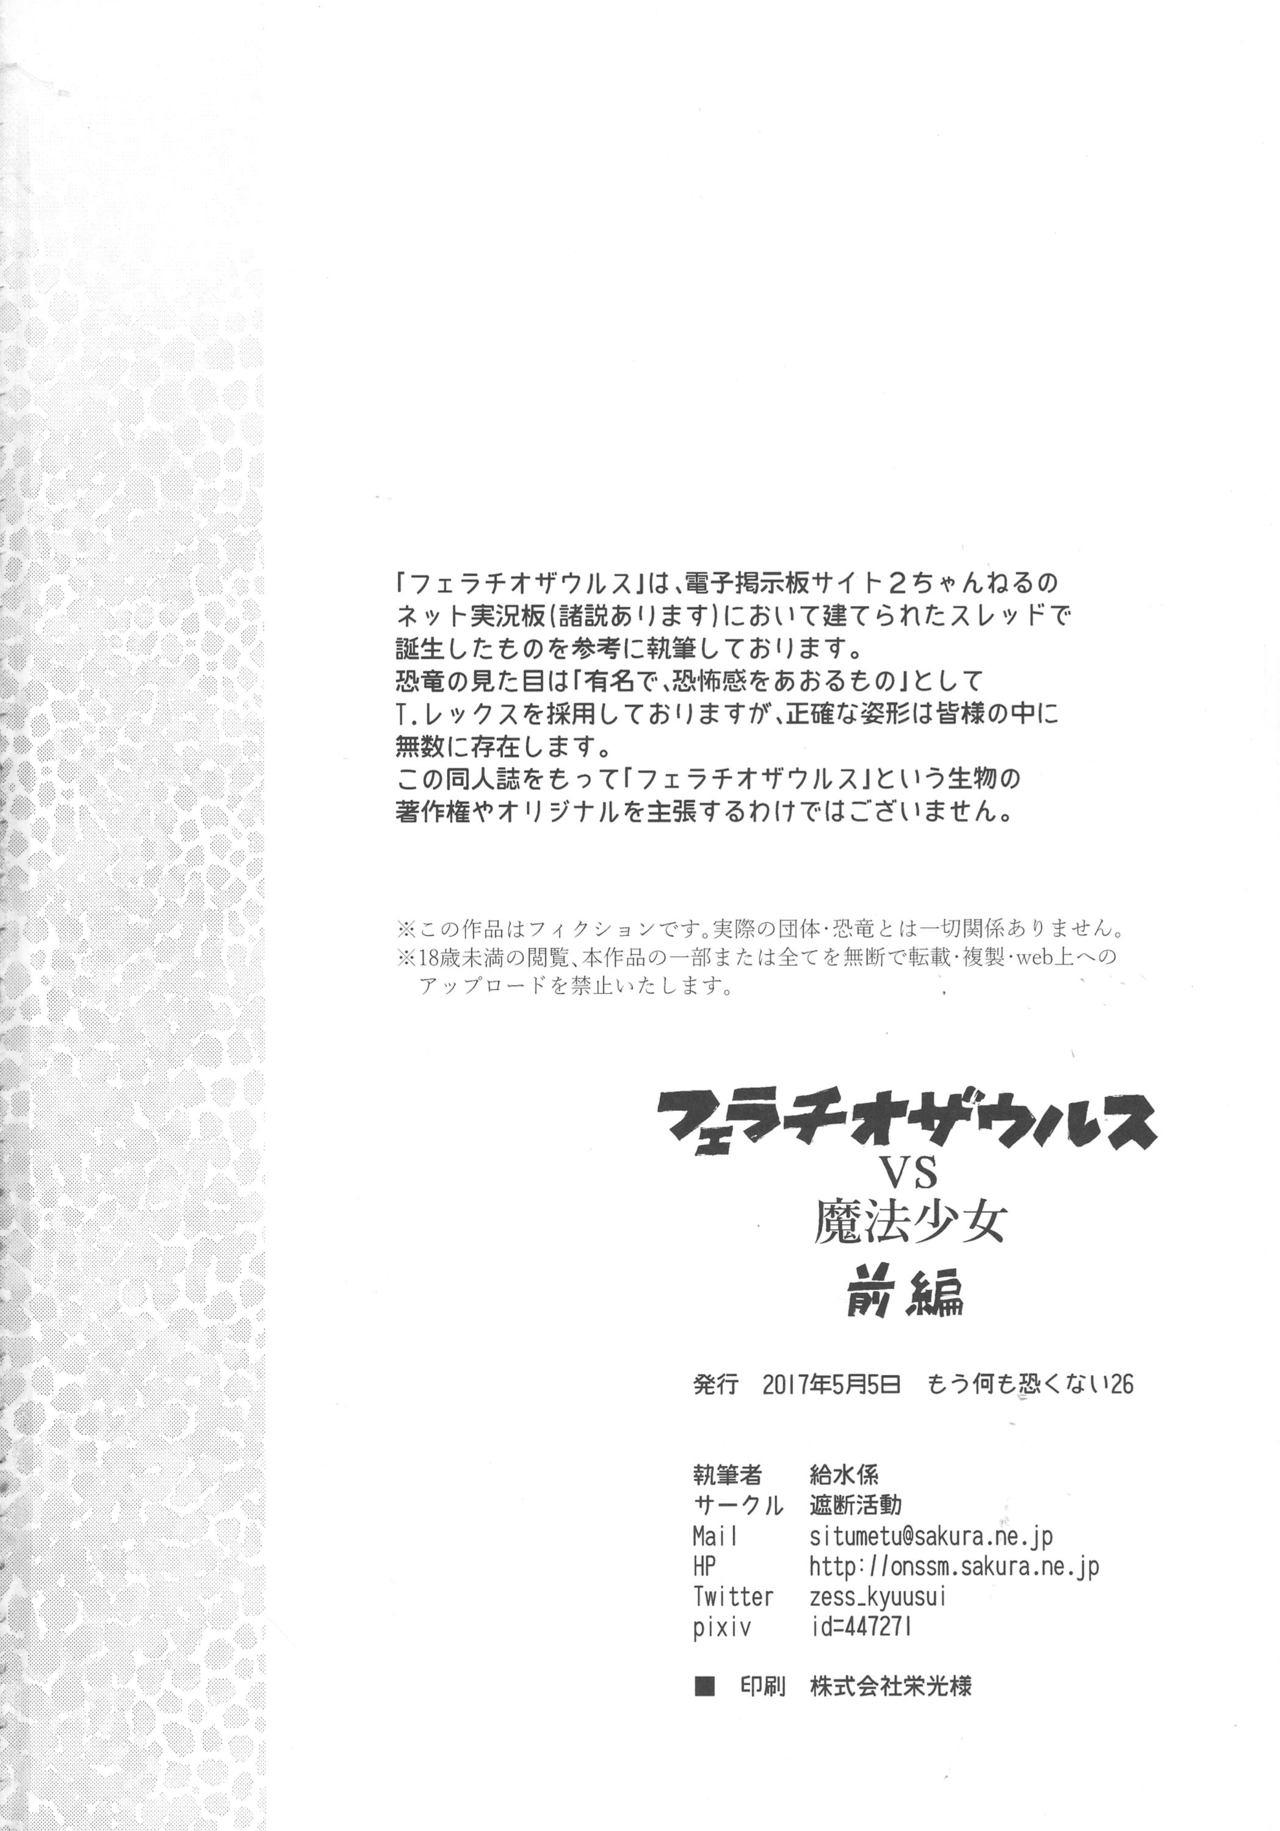 Alternative Fellatio Suarus VS Mahou Shoujo Zenpen - Puella magi madoka magica Cheating - Page 34